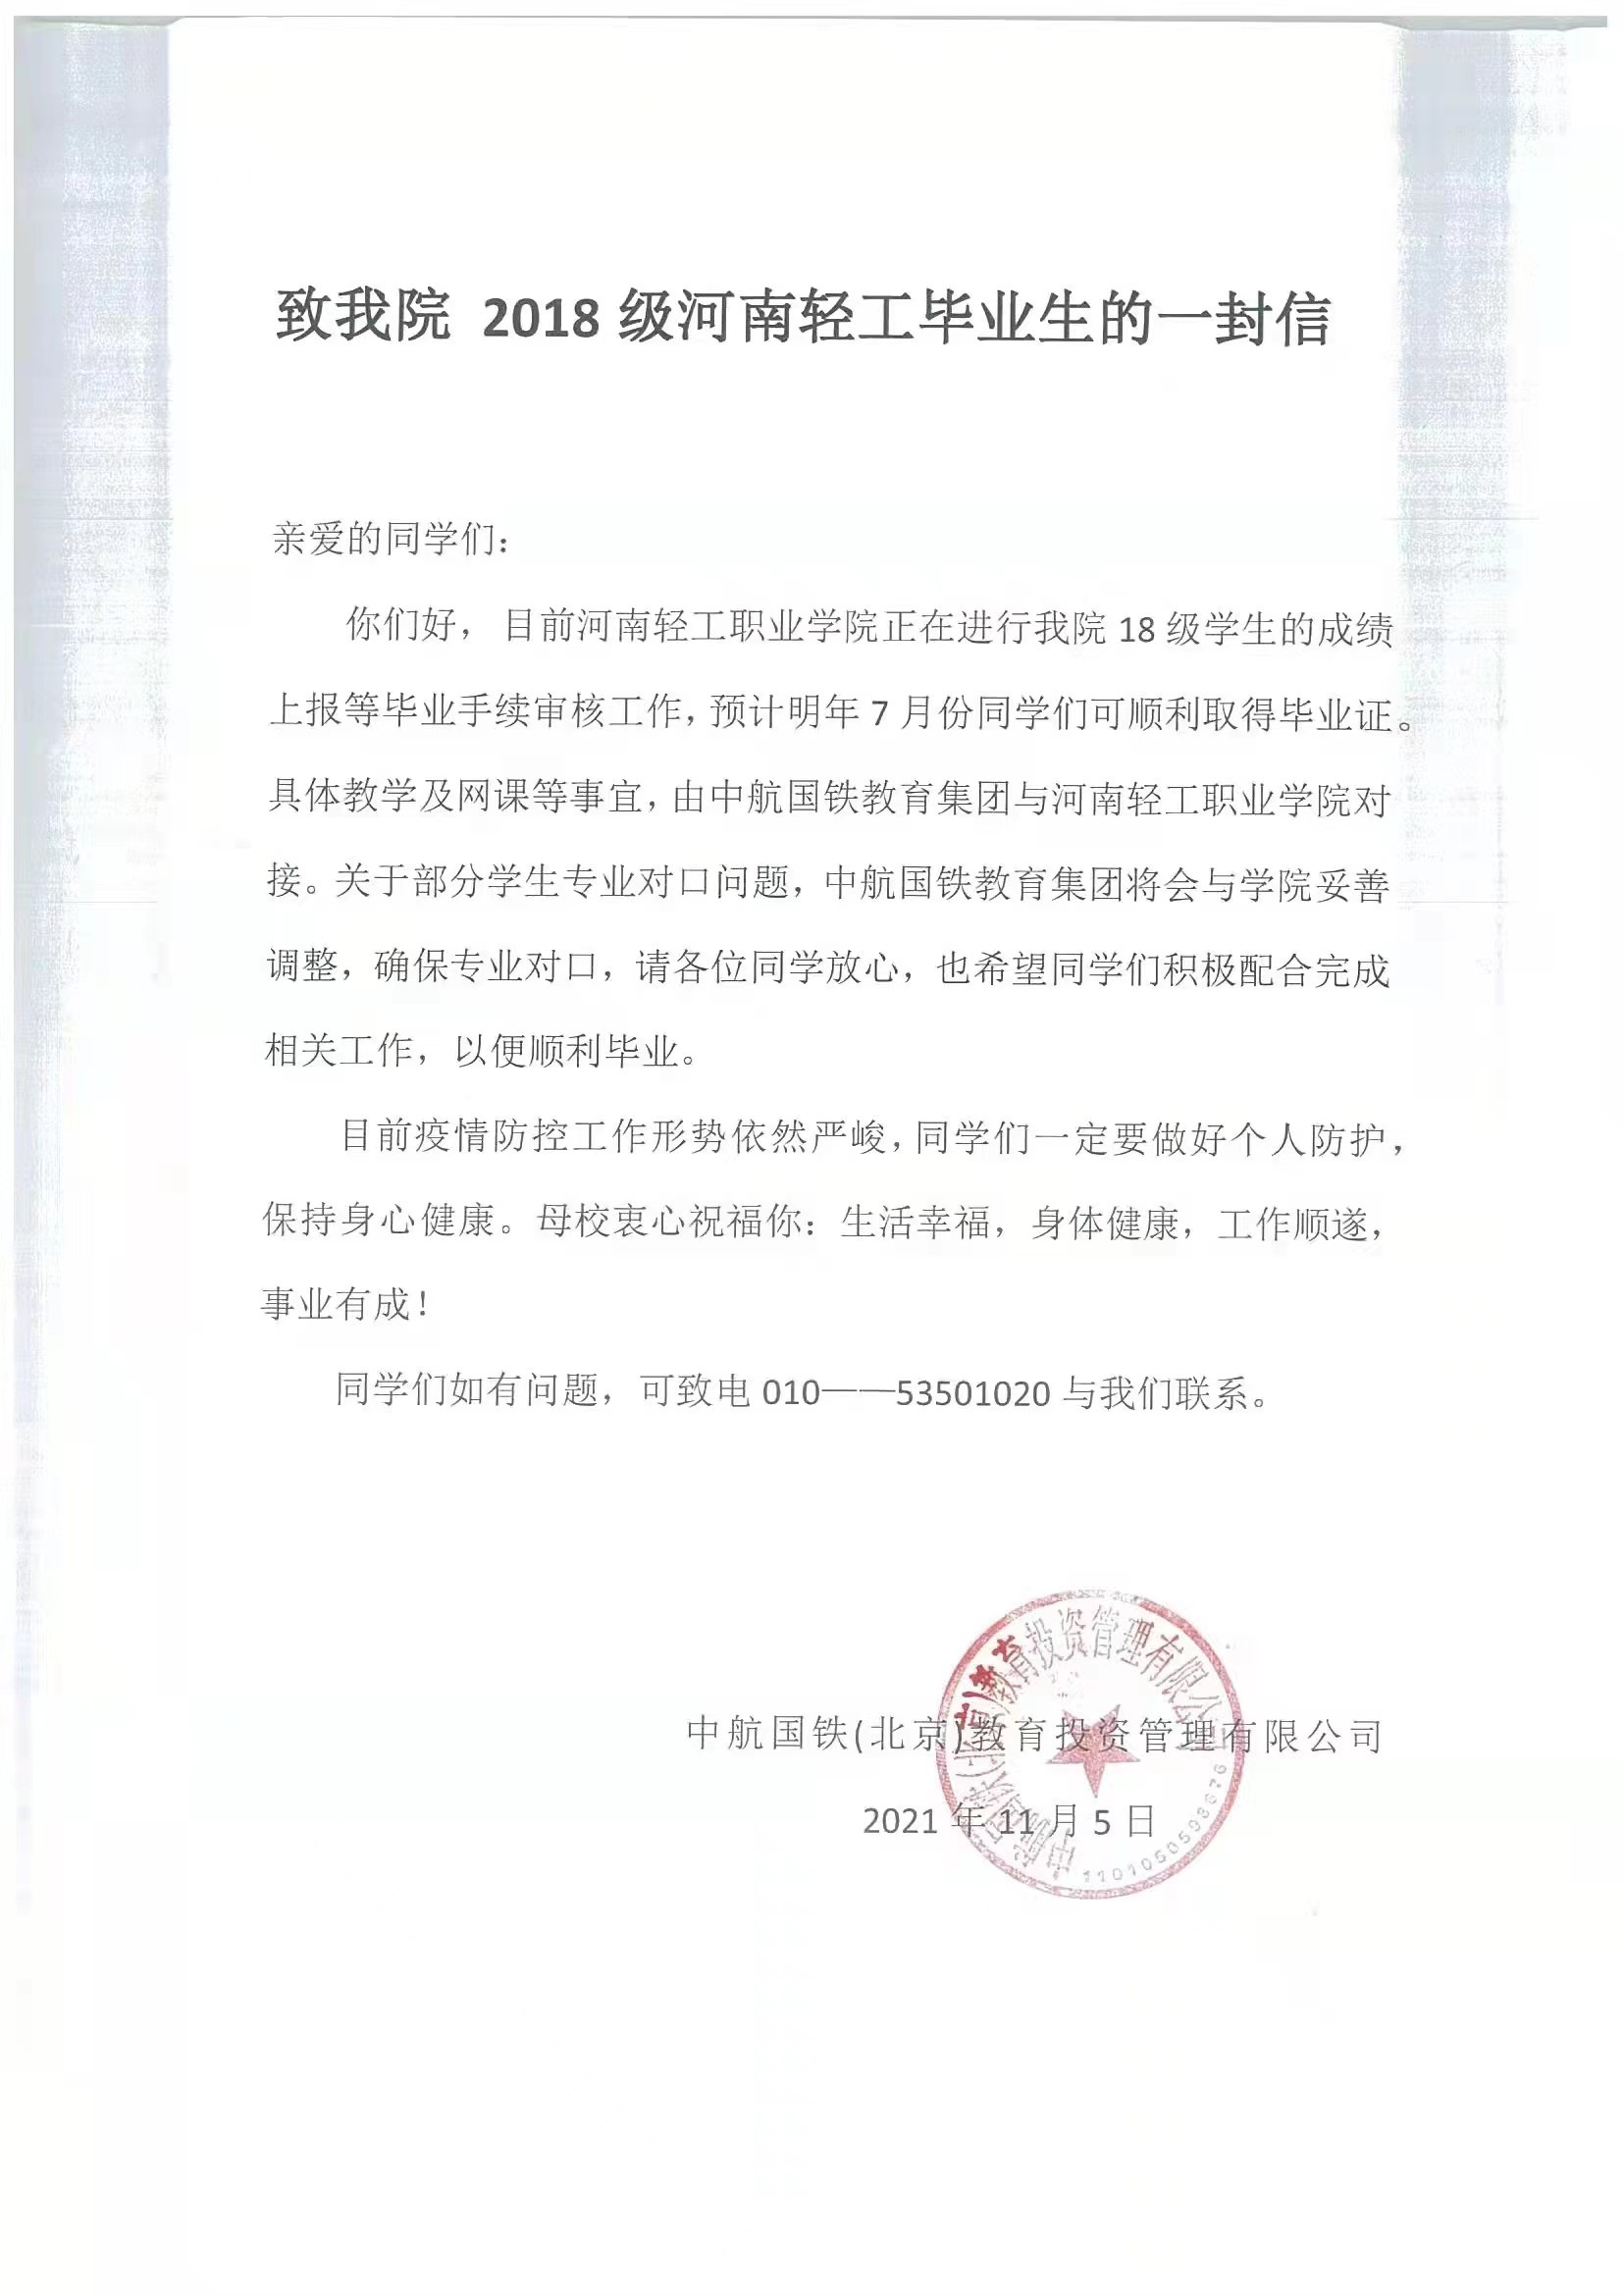 多名学生举报“中航国铁教育”违规办学  在北京、河北上课，学籍却在河南、陕西